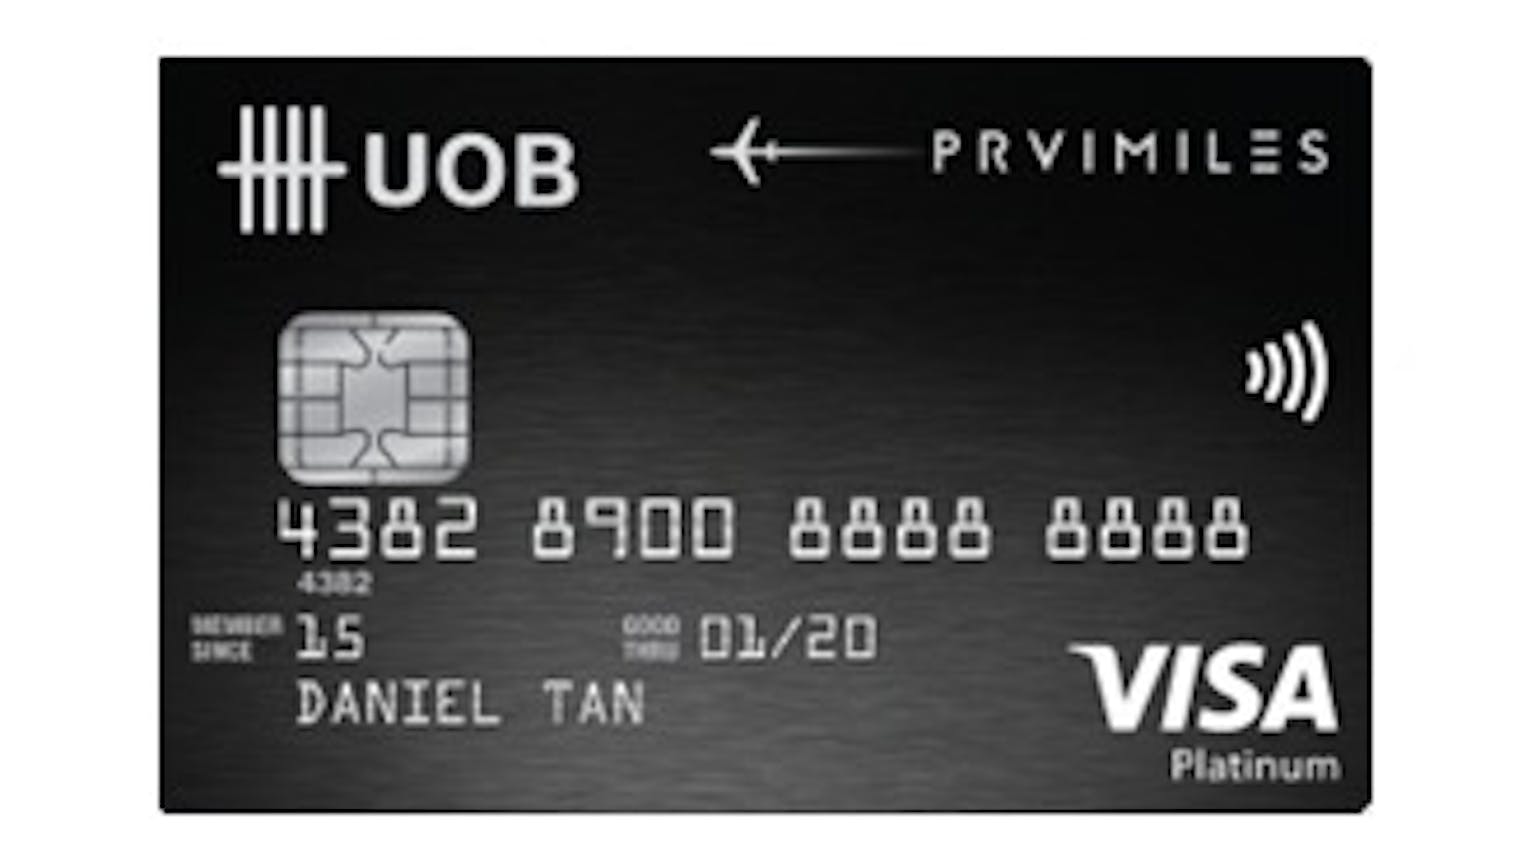 UOB PRVI Miles Card